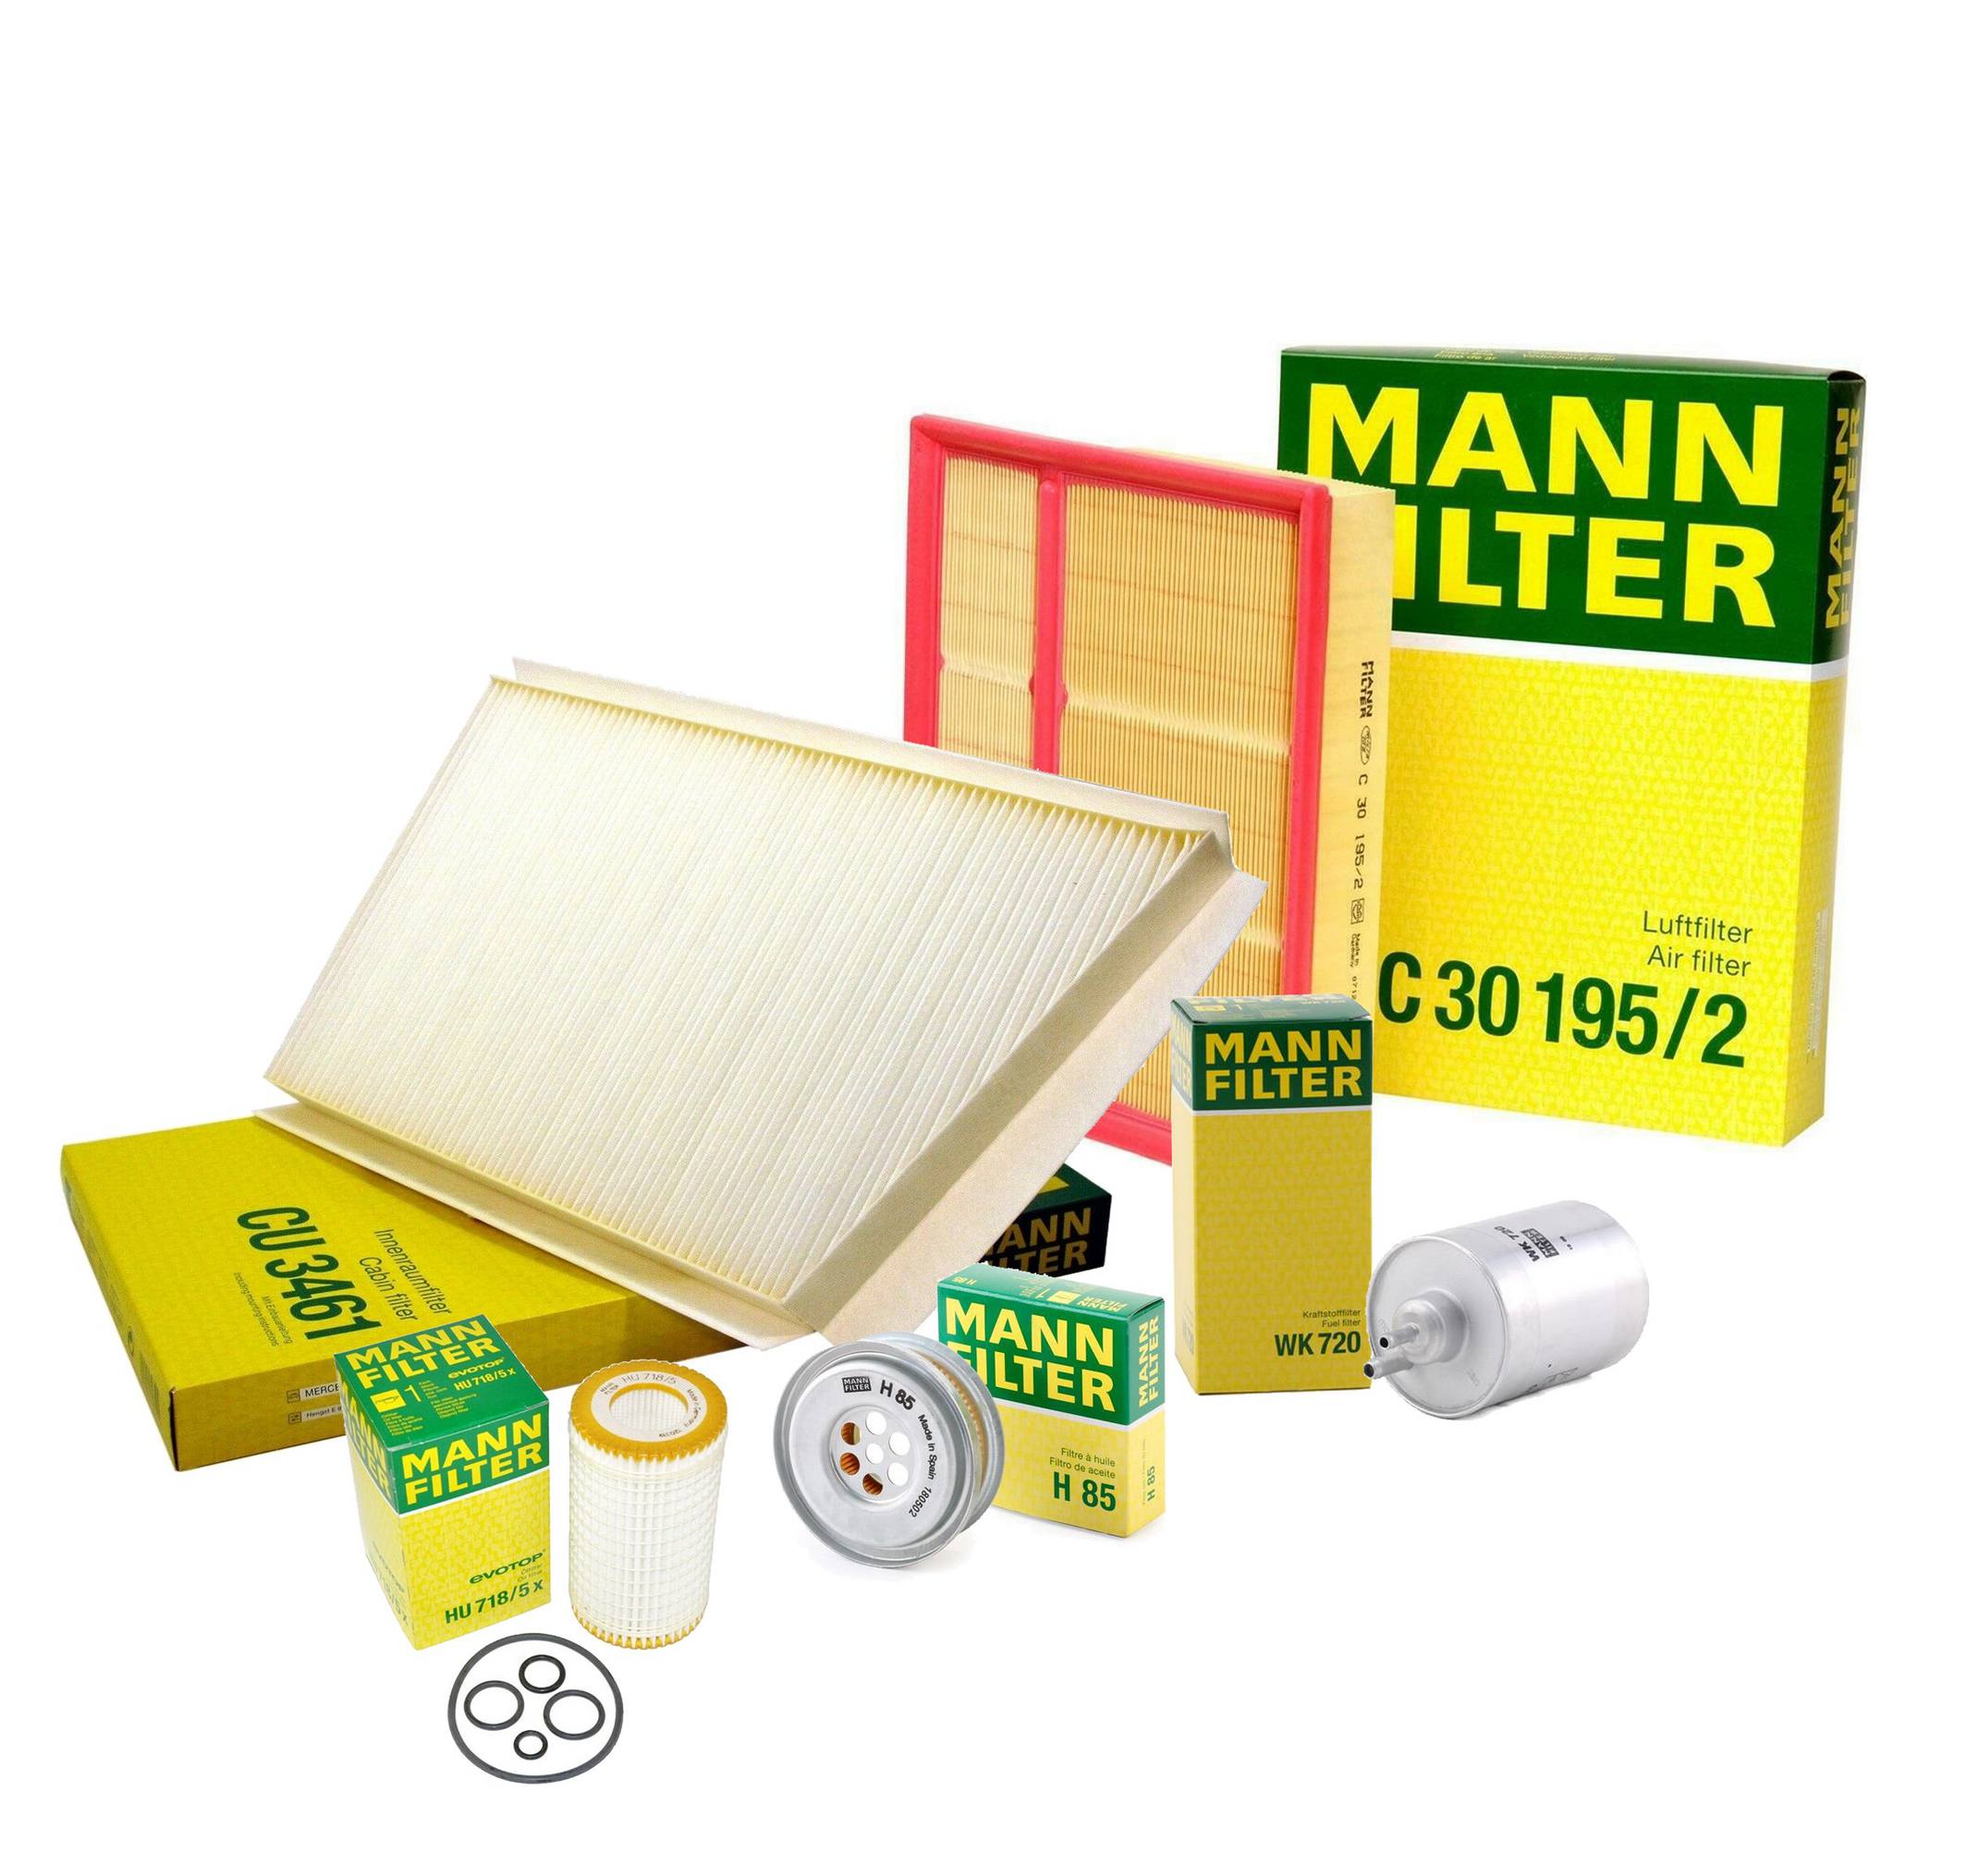 C 30 195/2 MANN FILTER Air Filter 6040941304